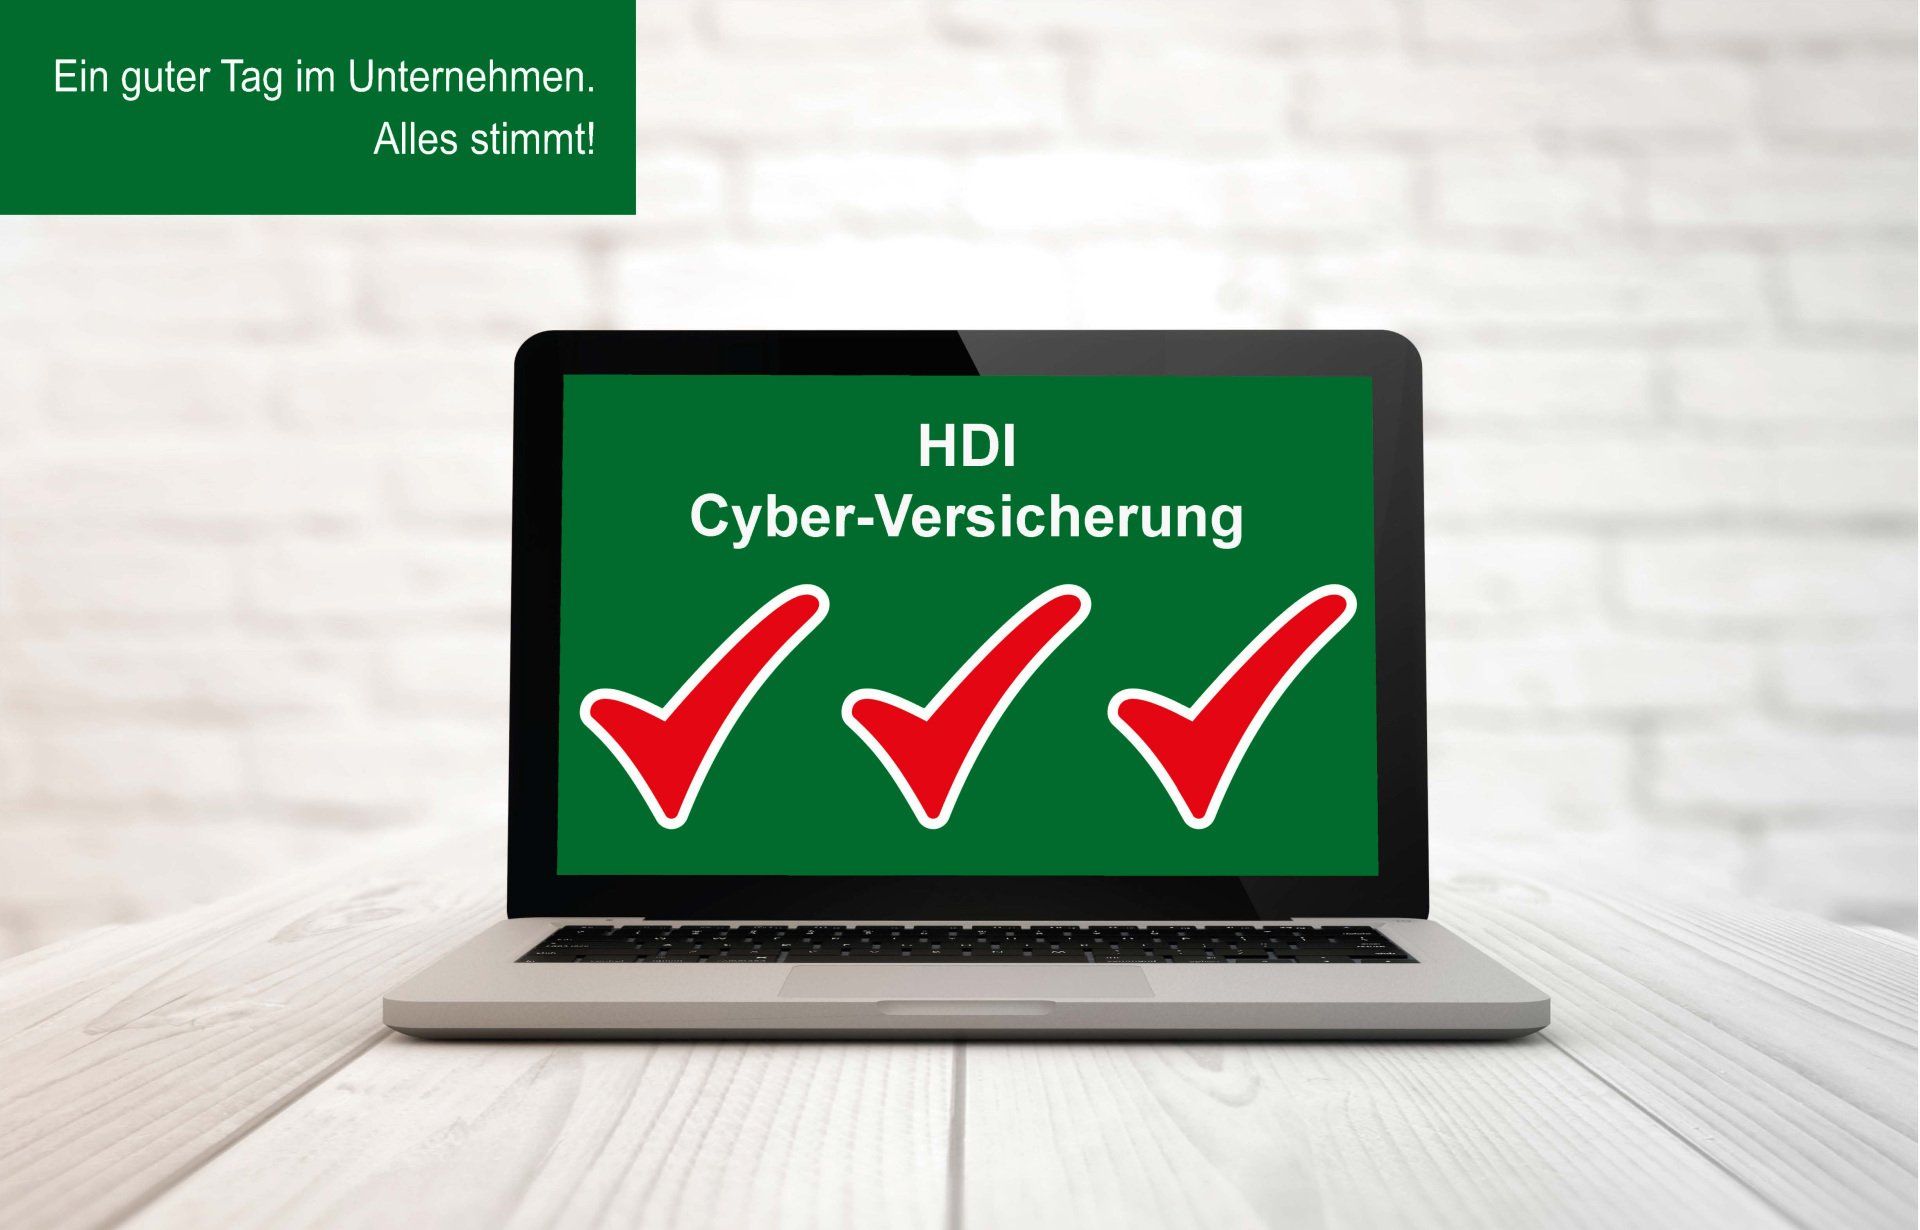 2-serve HDI Osnabrück Cyber-Versicherung